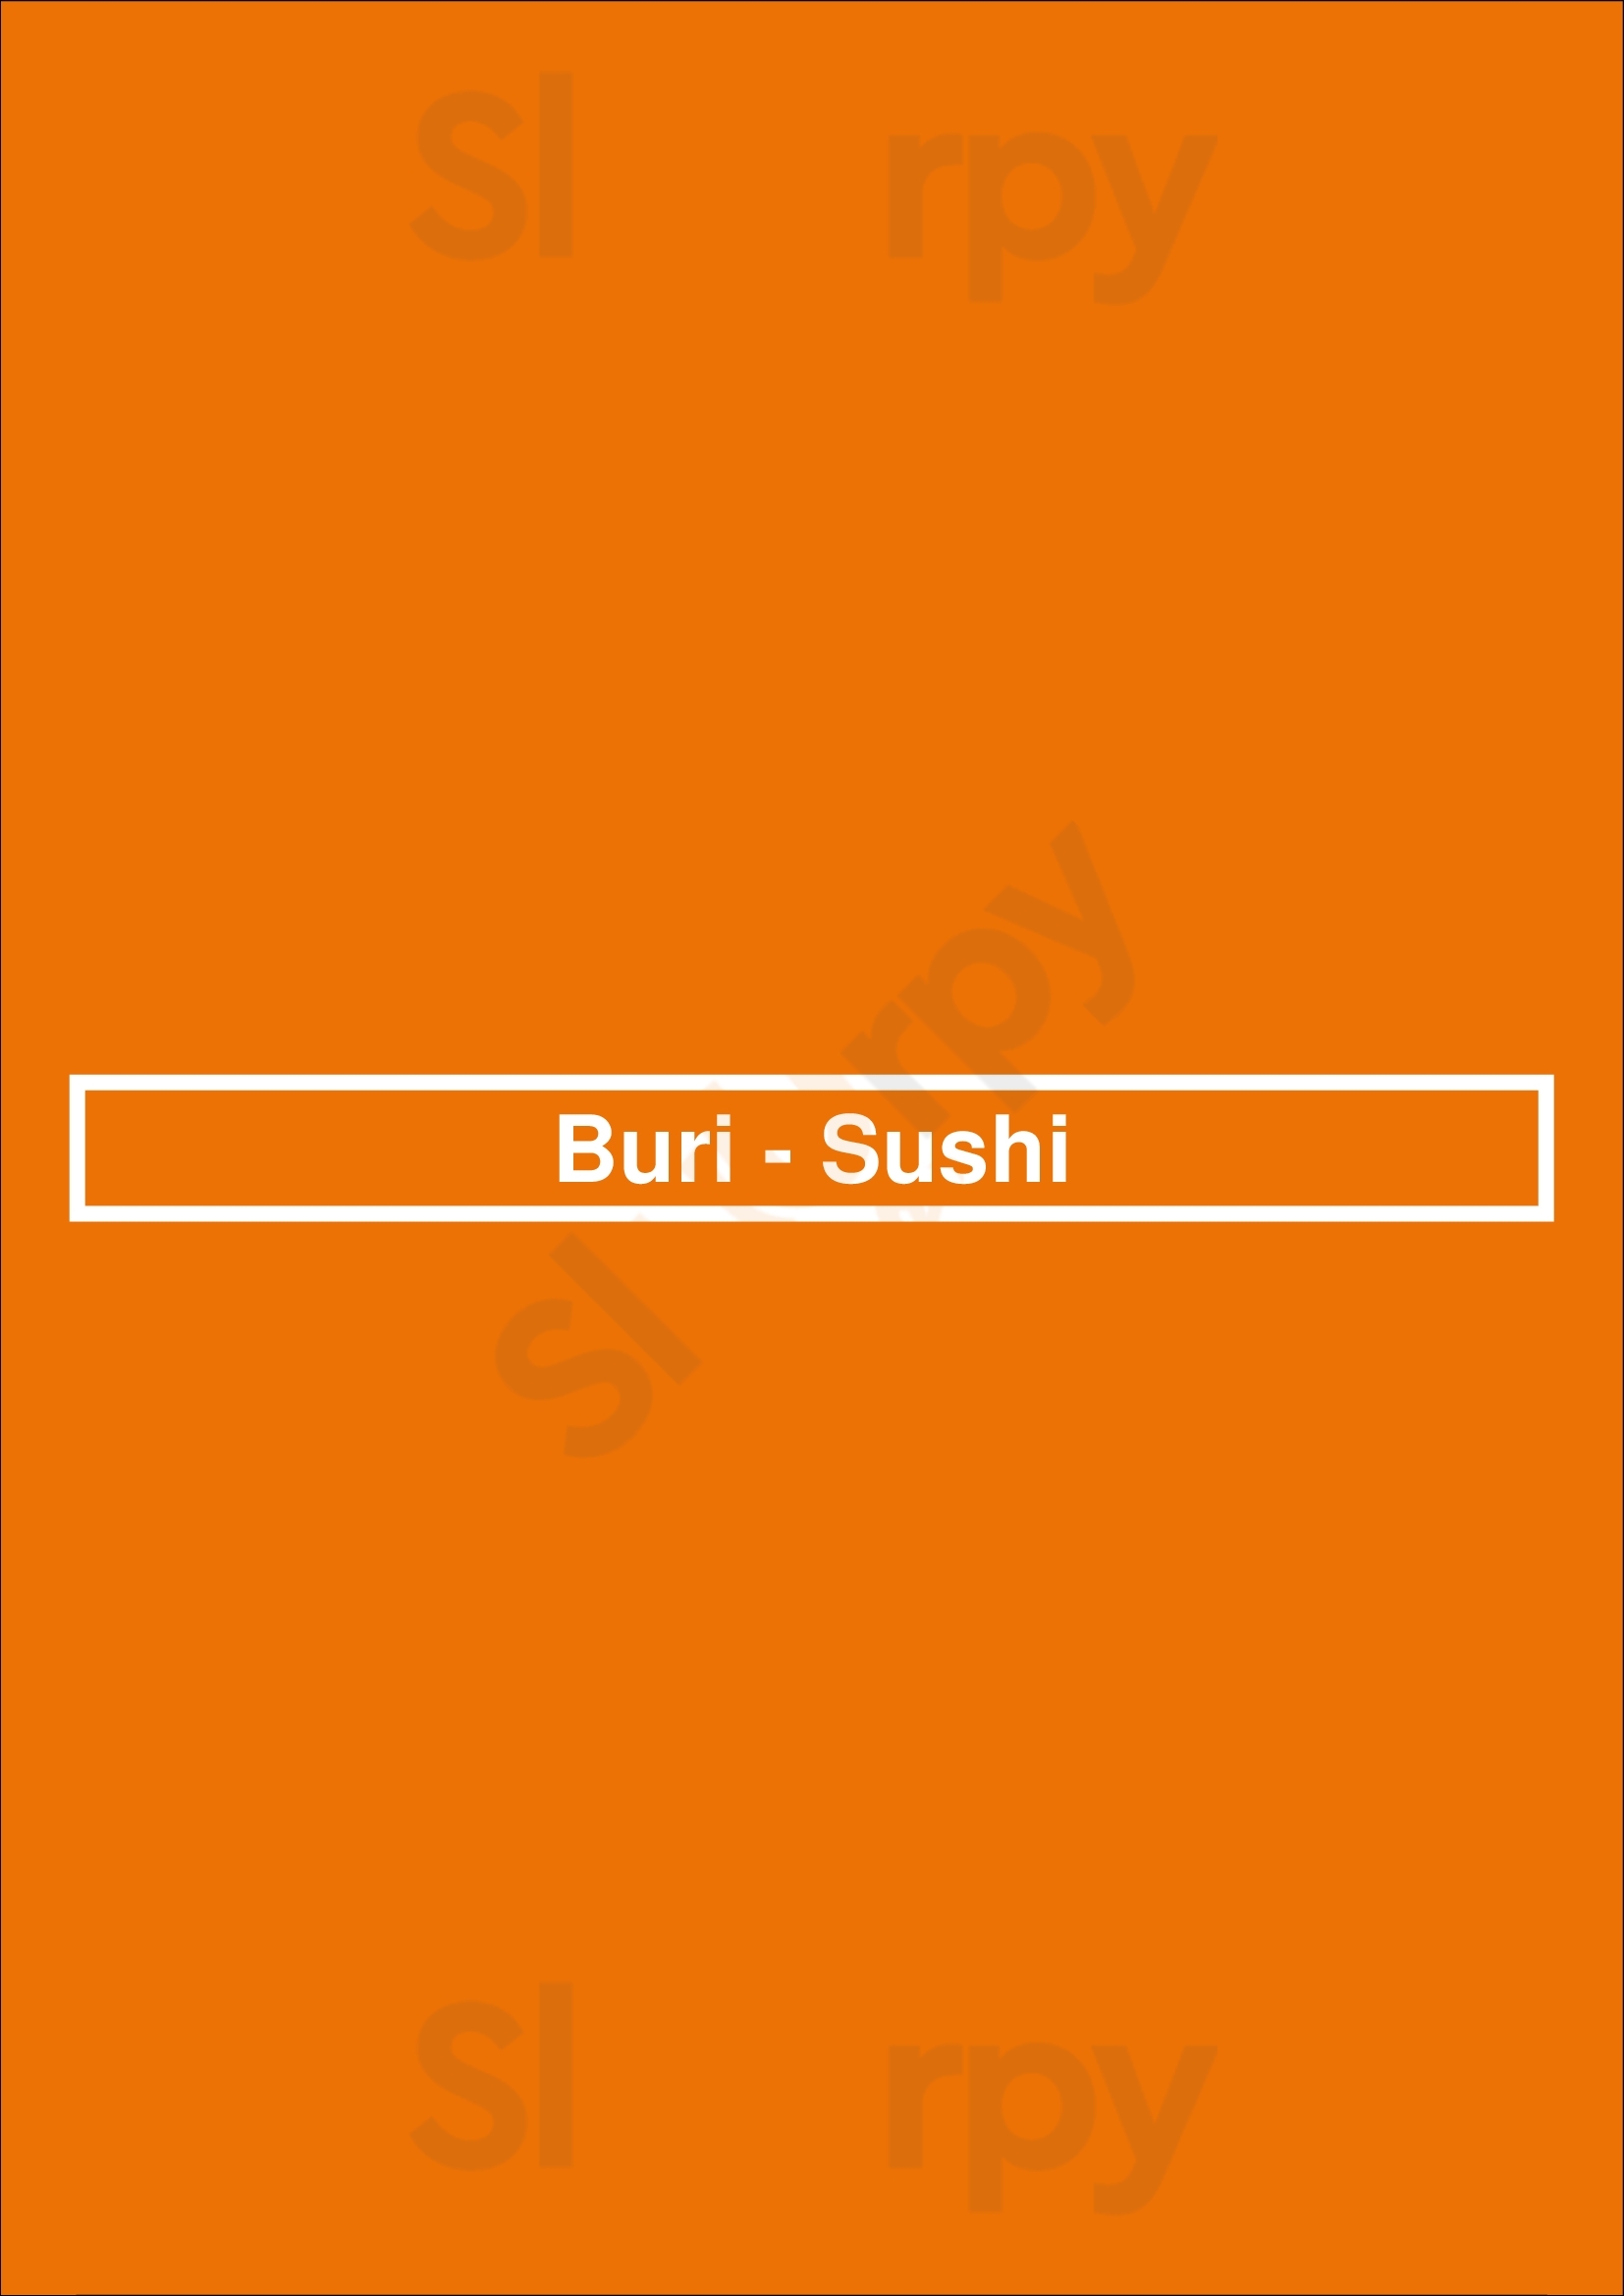 Buri - Sushi Porto Menu - 1